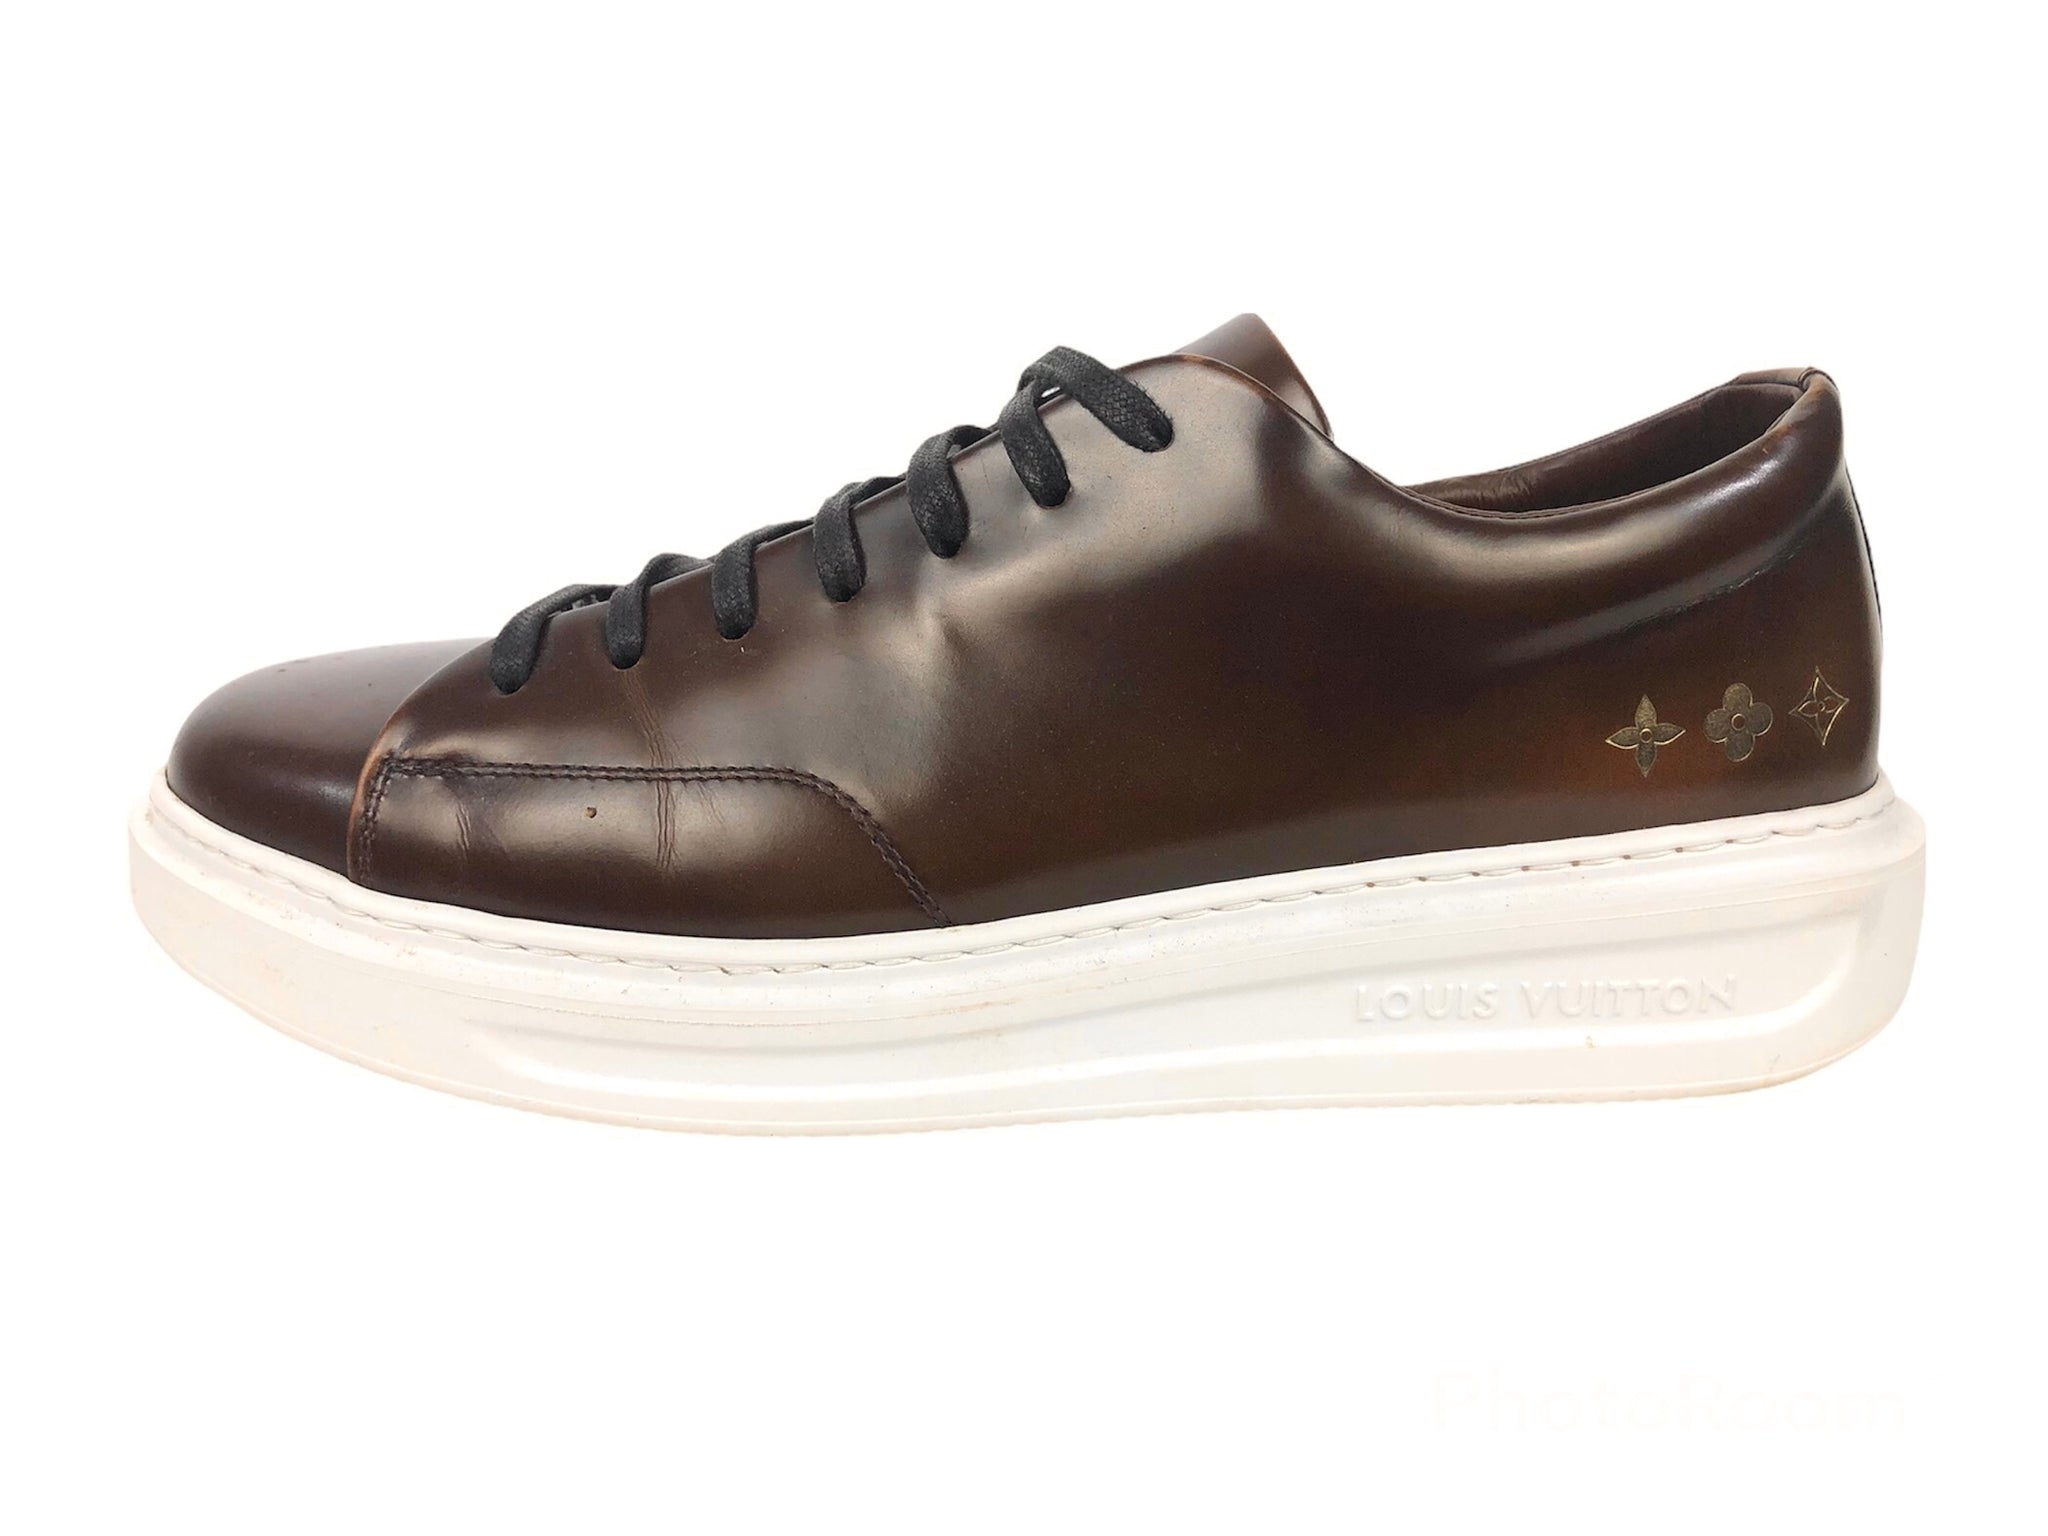 Louis Vuitton Beverly Hills Brown Sneaker Sz 5 1/2 US 6 1/2